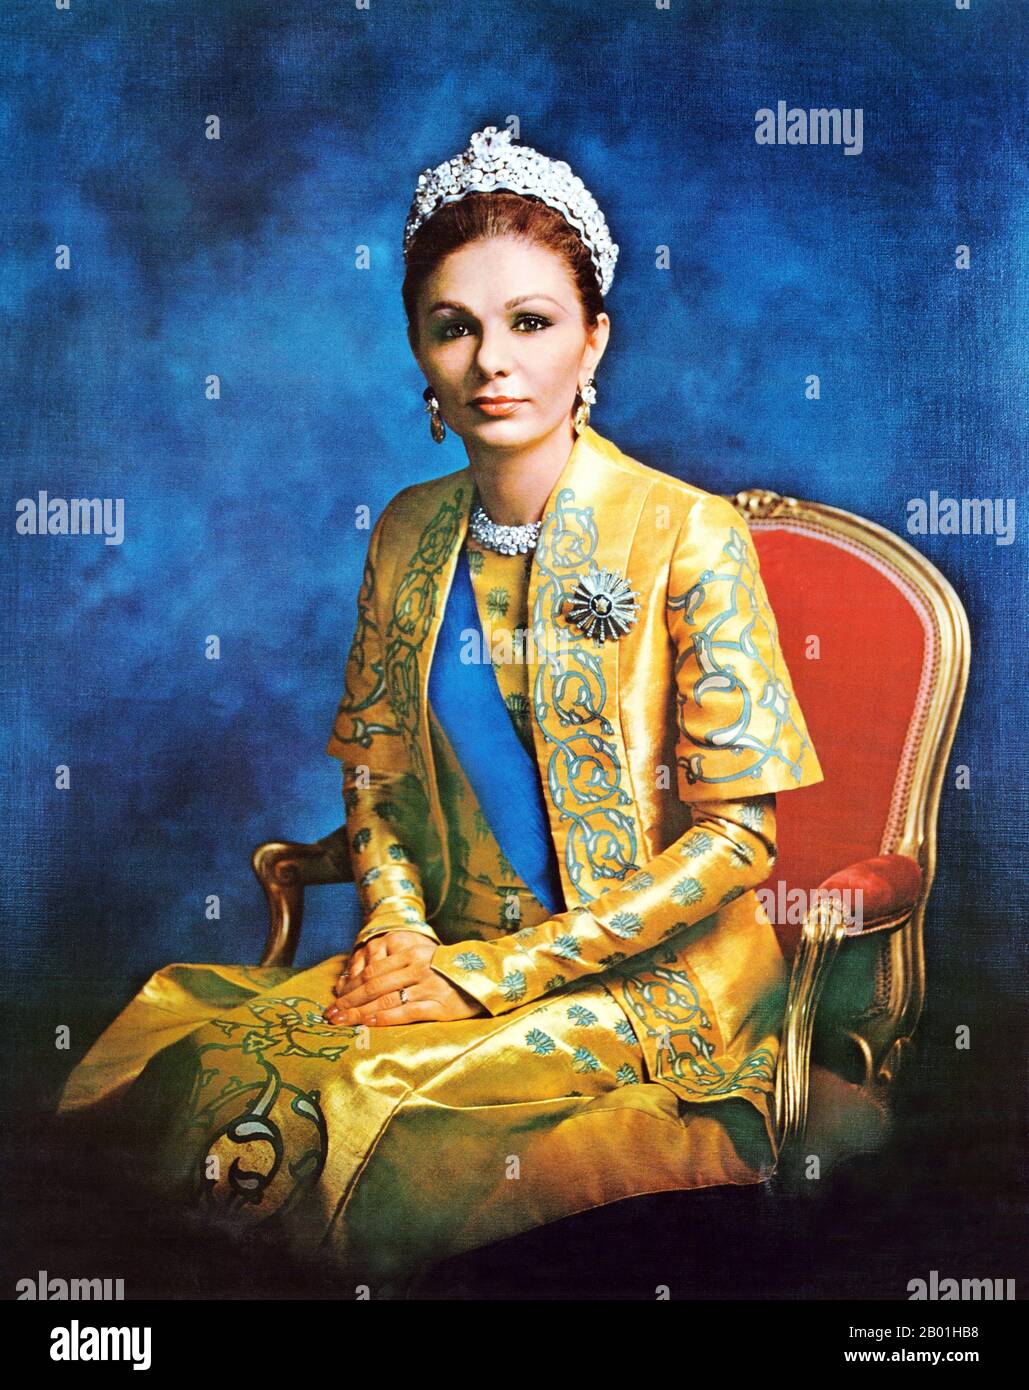 Iran/Persien: Offizielles Porträt von Kaiserin Farah Pahlavi (geboren am 13. Oktober 1938), Ehefrau und Witwe von Mohammad Reza Pahlavi (1919-1979), dem letzten Schah des Iran, 1973. Farah Pahlavi, geboren in Farah Diba, ist die ehemalige Königin und Kaiserin des Iran. Sie ist die Witwe von Mohammad Reza Pahlavi, dem Schah des Iran, und der einzigen Kaiserin (Shahbanou) des modernen Iran. Sie war von 1959 bis 1967 Königin des Iran und von 1967 bis zum Exil 1979 Kaiserin. Stockfoto